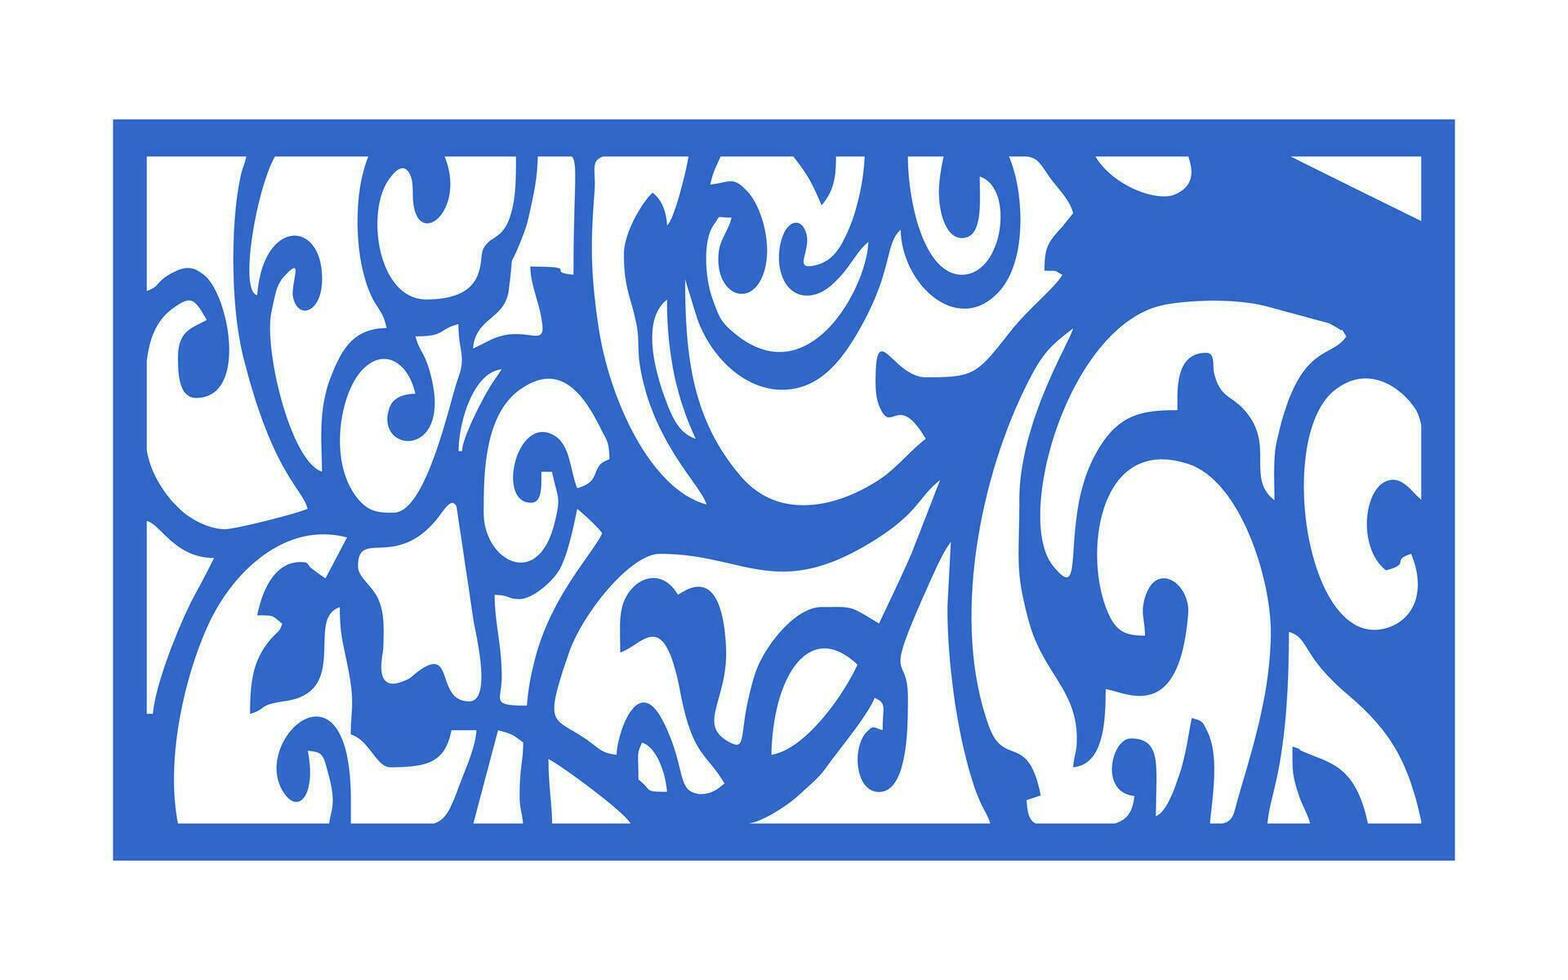 decorativo azul patrones, islámico, floral y geométrico modelo para cnc láser corte vector